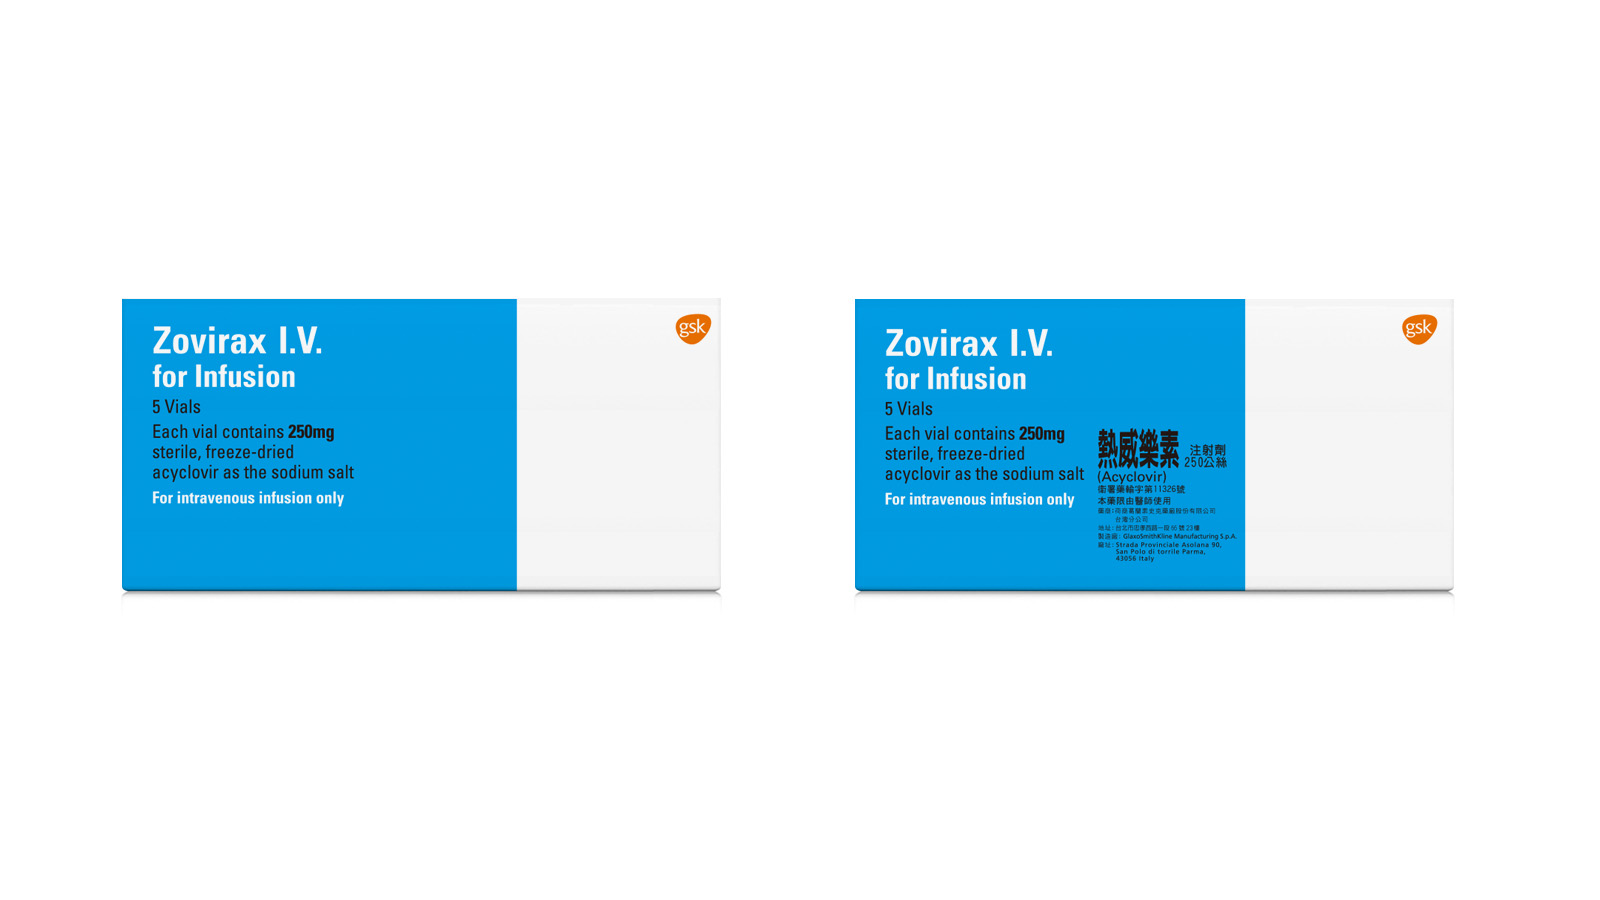 Zovirax IV 熱威樂素注射劑產品照片